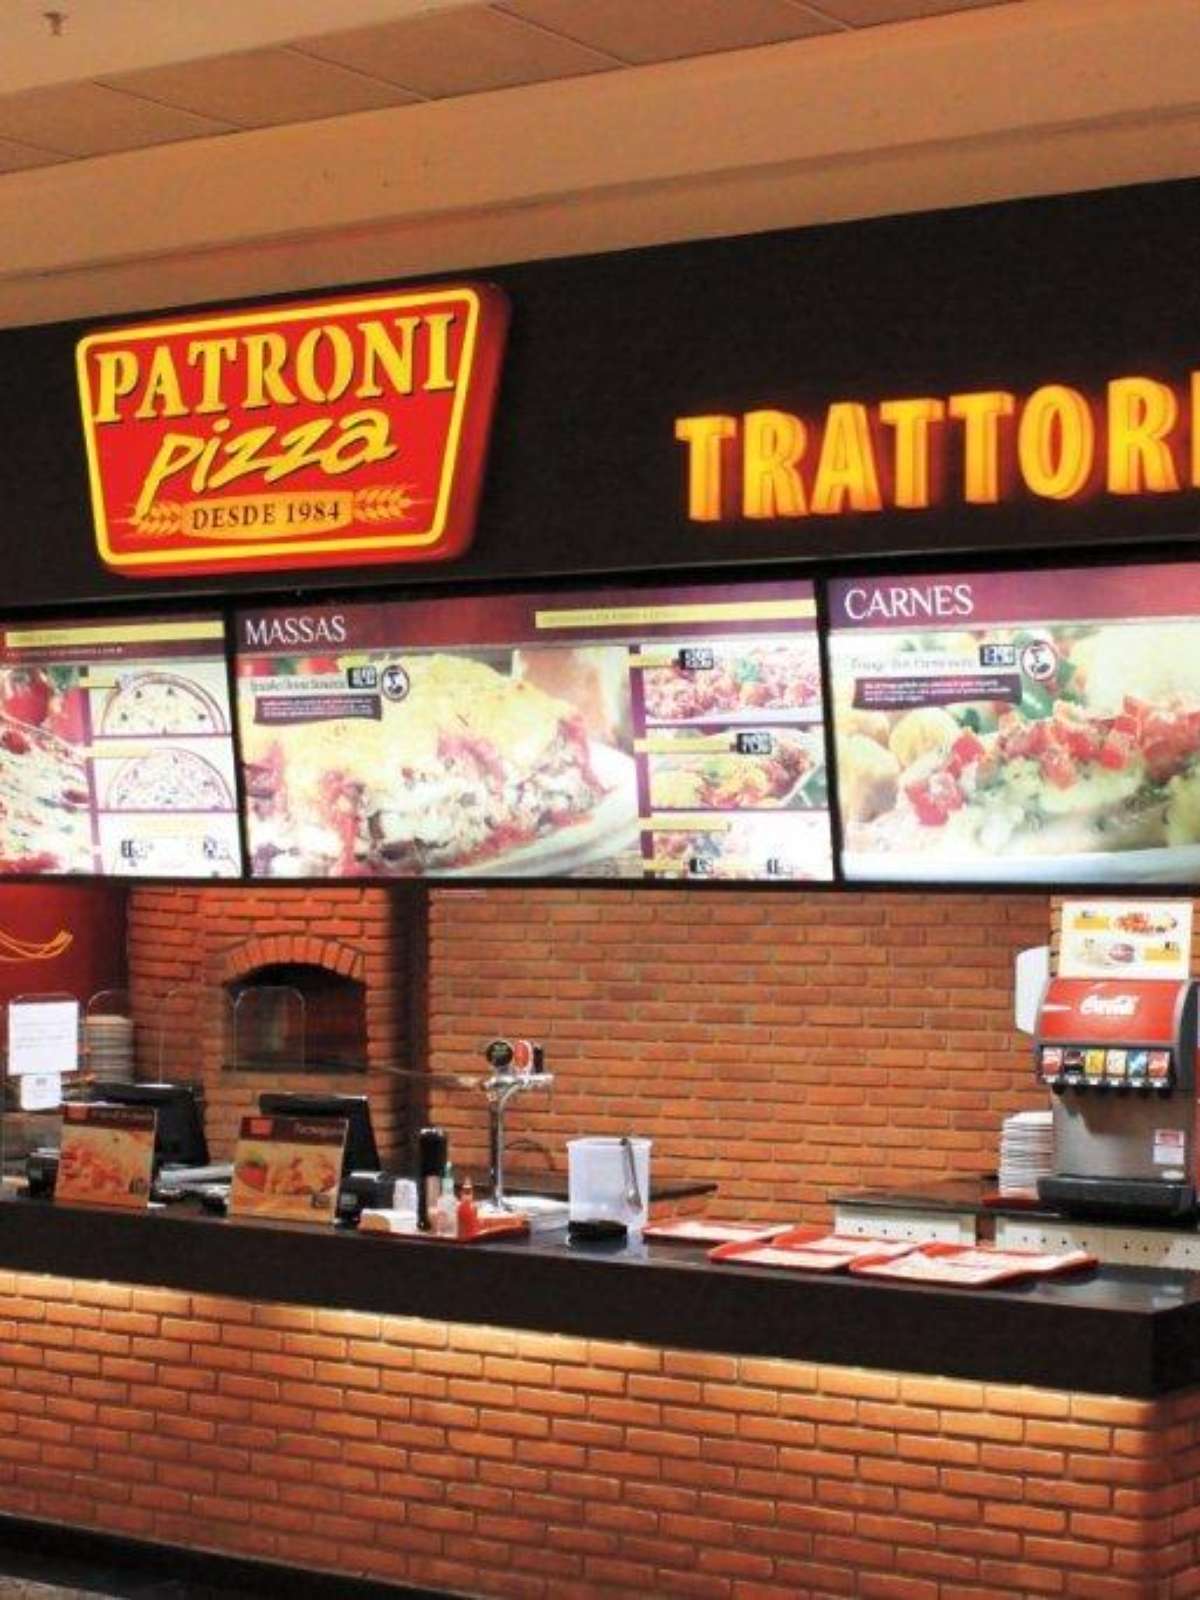 Site de compras vende pizza no Itaim por 6,06 reais